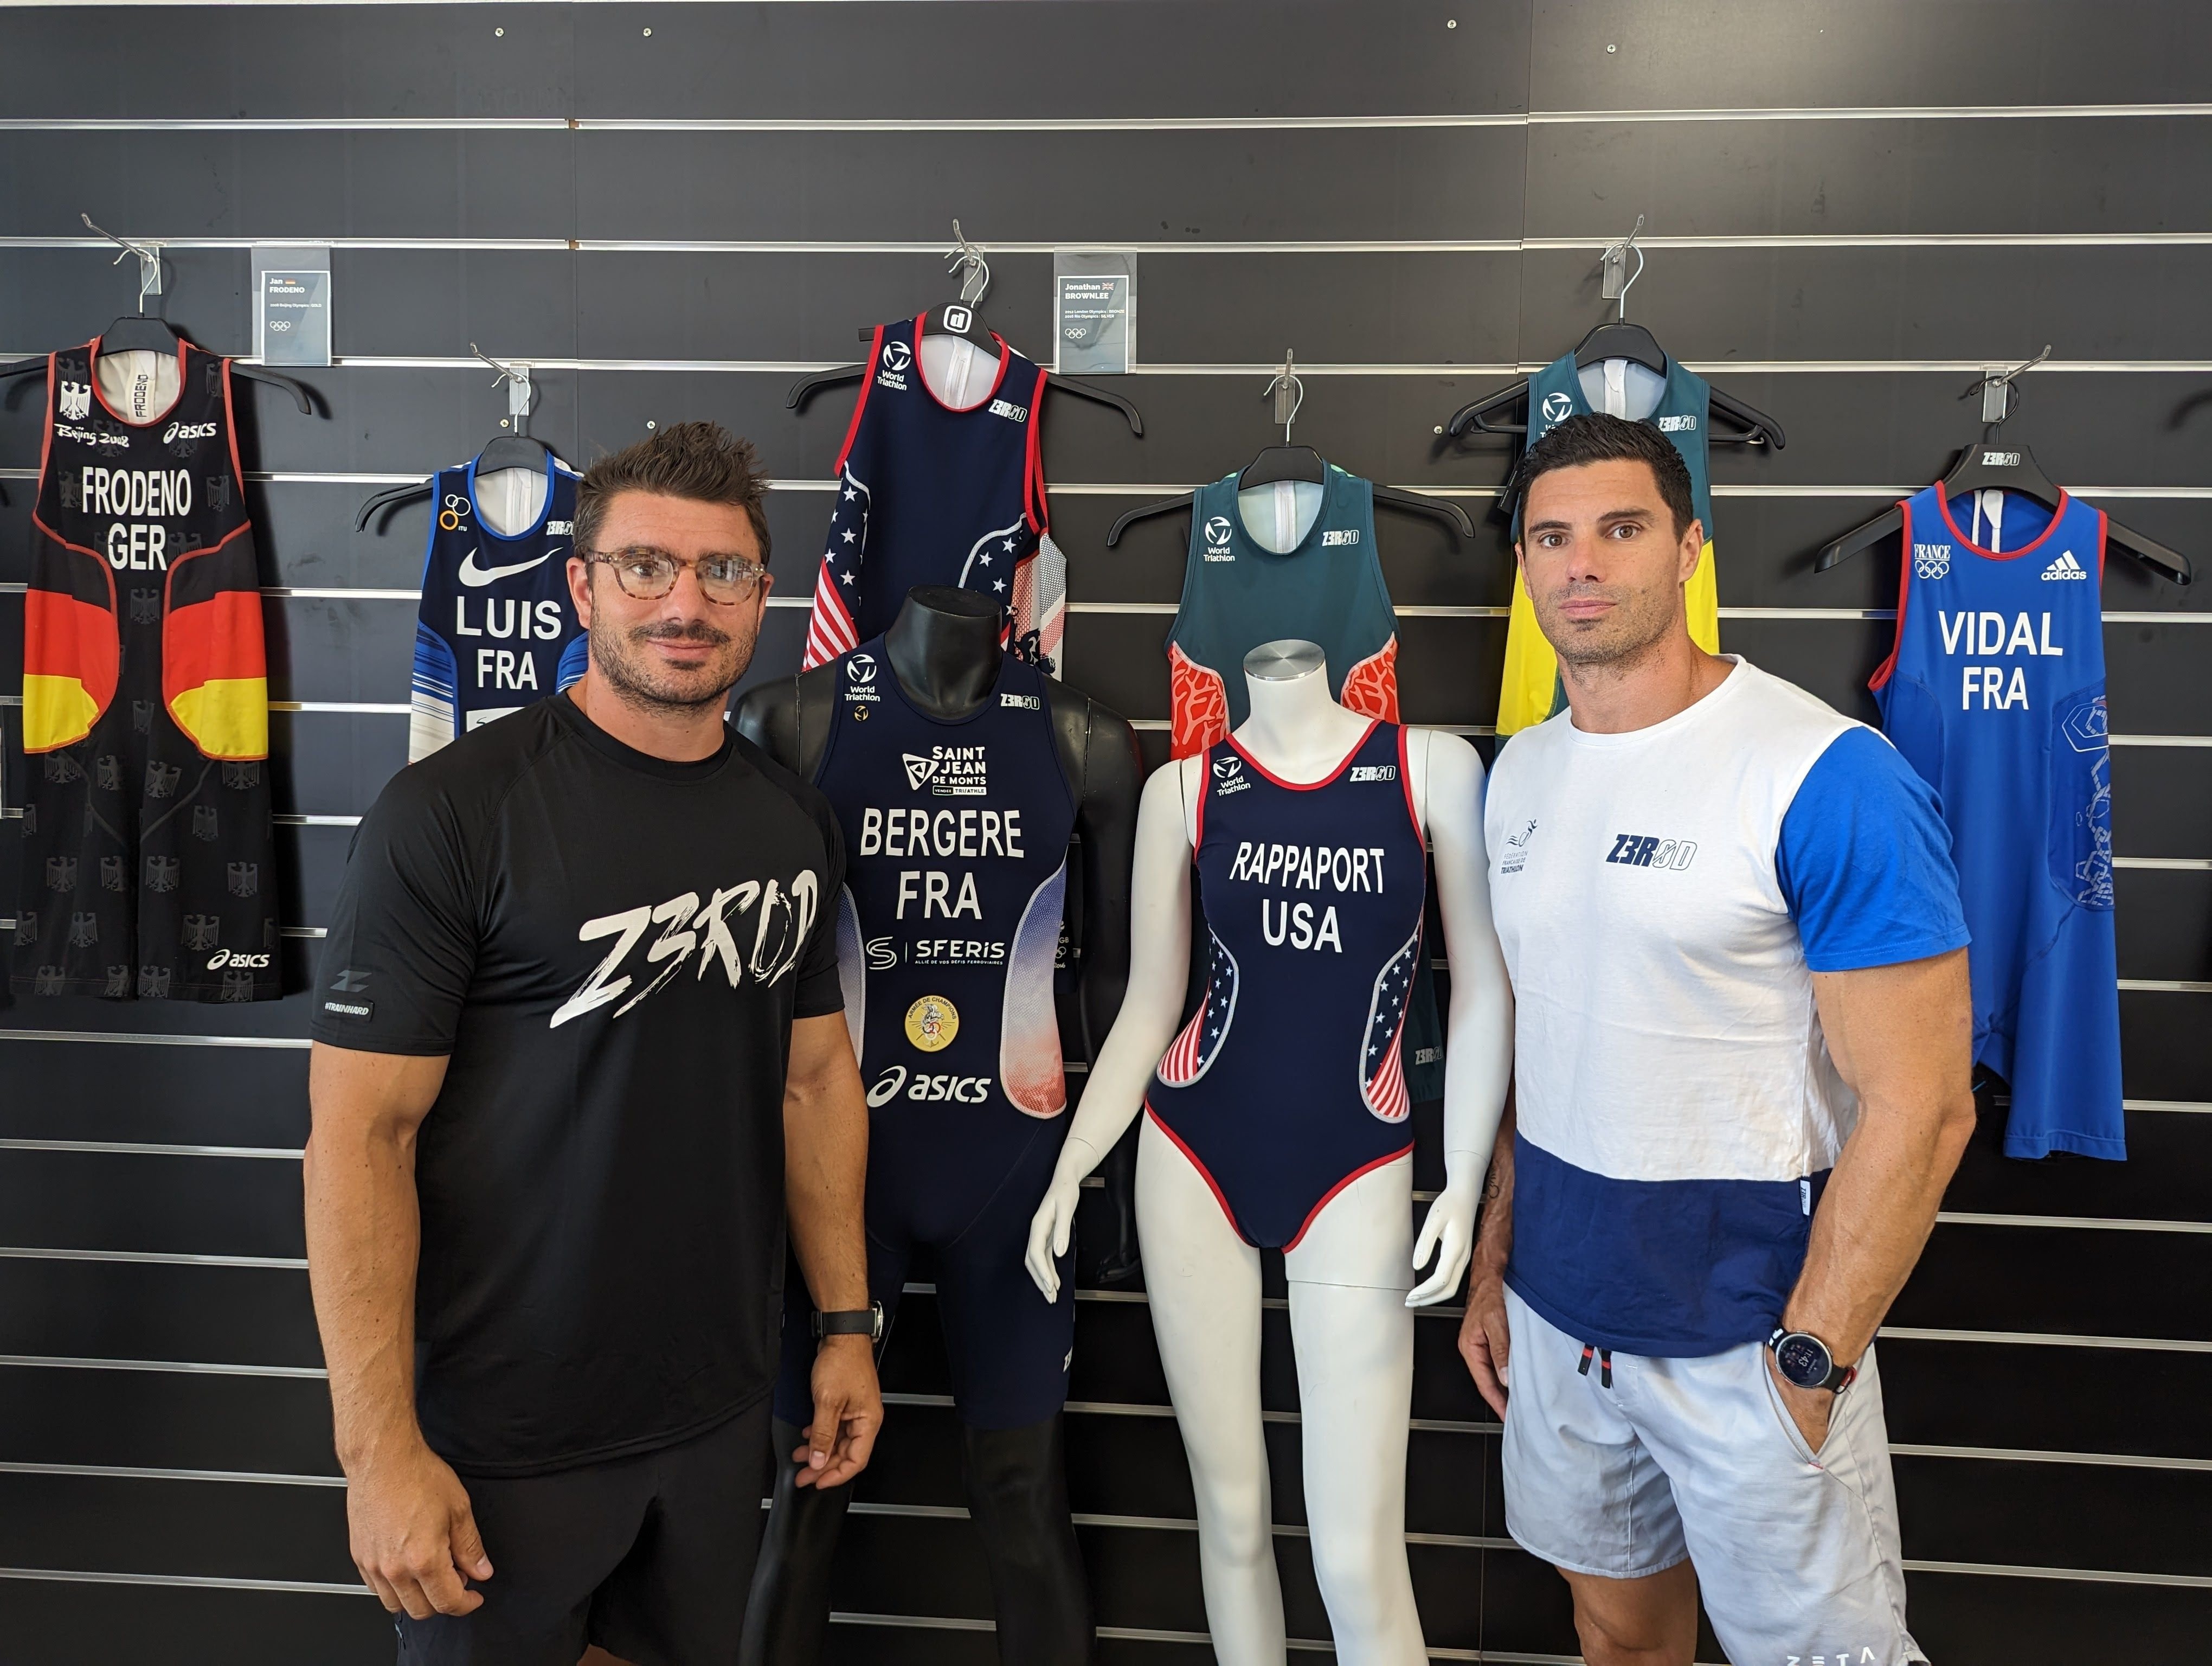 Les frères Frédéric et Pierre Dorez, fondateurs de la marque de vêtements de triathlon ZeroD, qui va équiper de nombreuses fédérations lors des Jeux olympiques de Paris l'an prochain. ZeroD